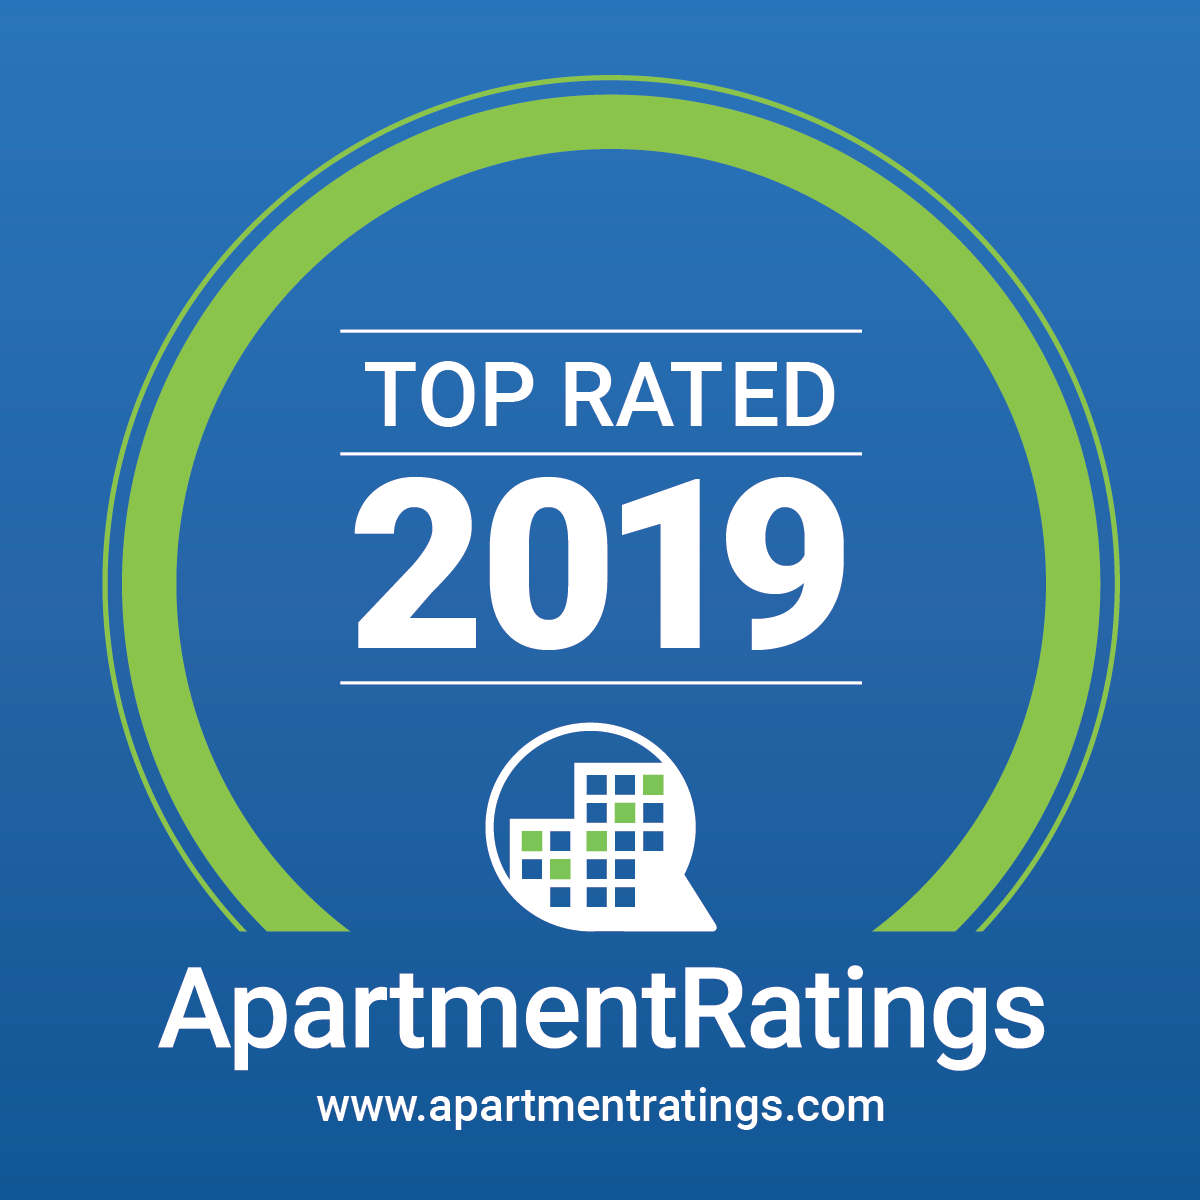 apartmentratings-award-seal-final-2019.png